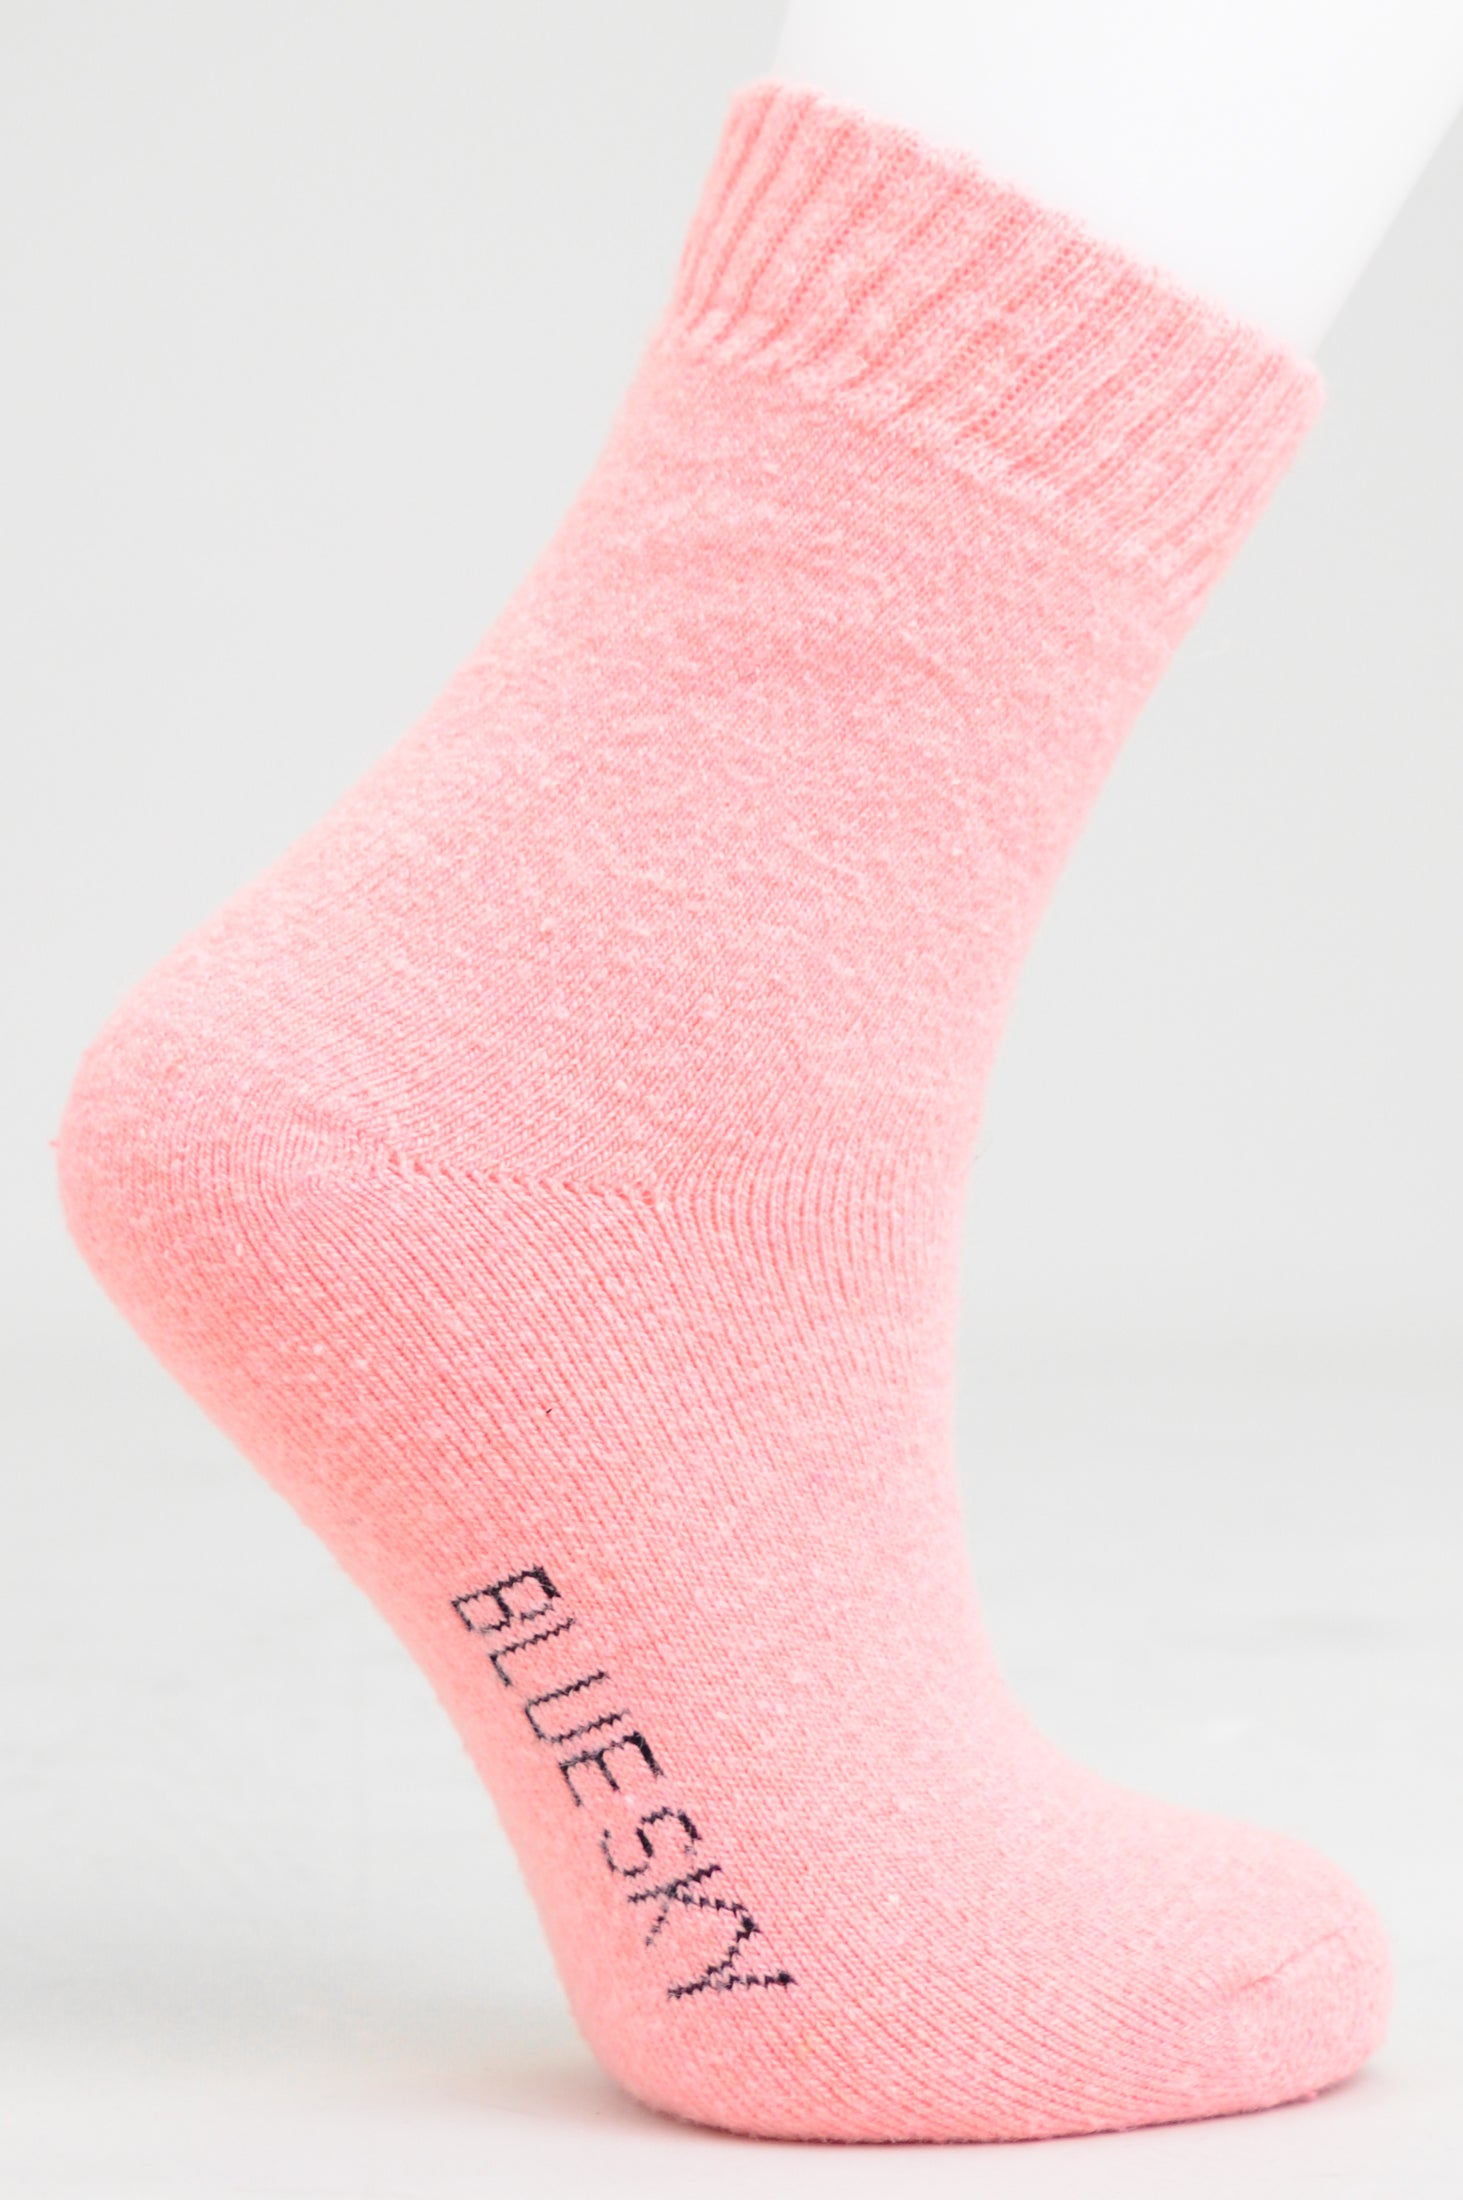 Men's Merino Wool Boot/Ski Socks for Literacy – Blue Sky Clothing